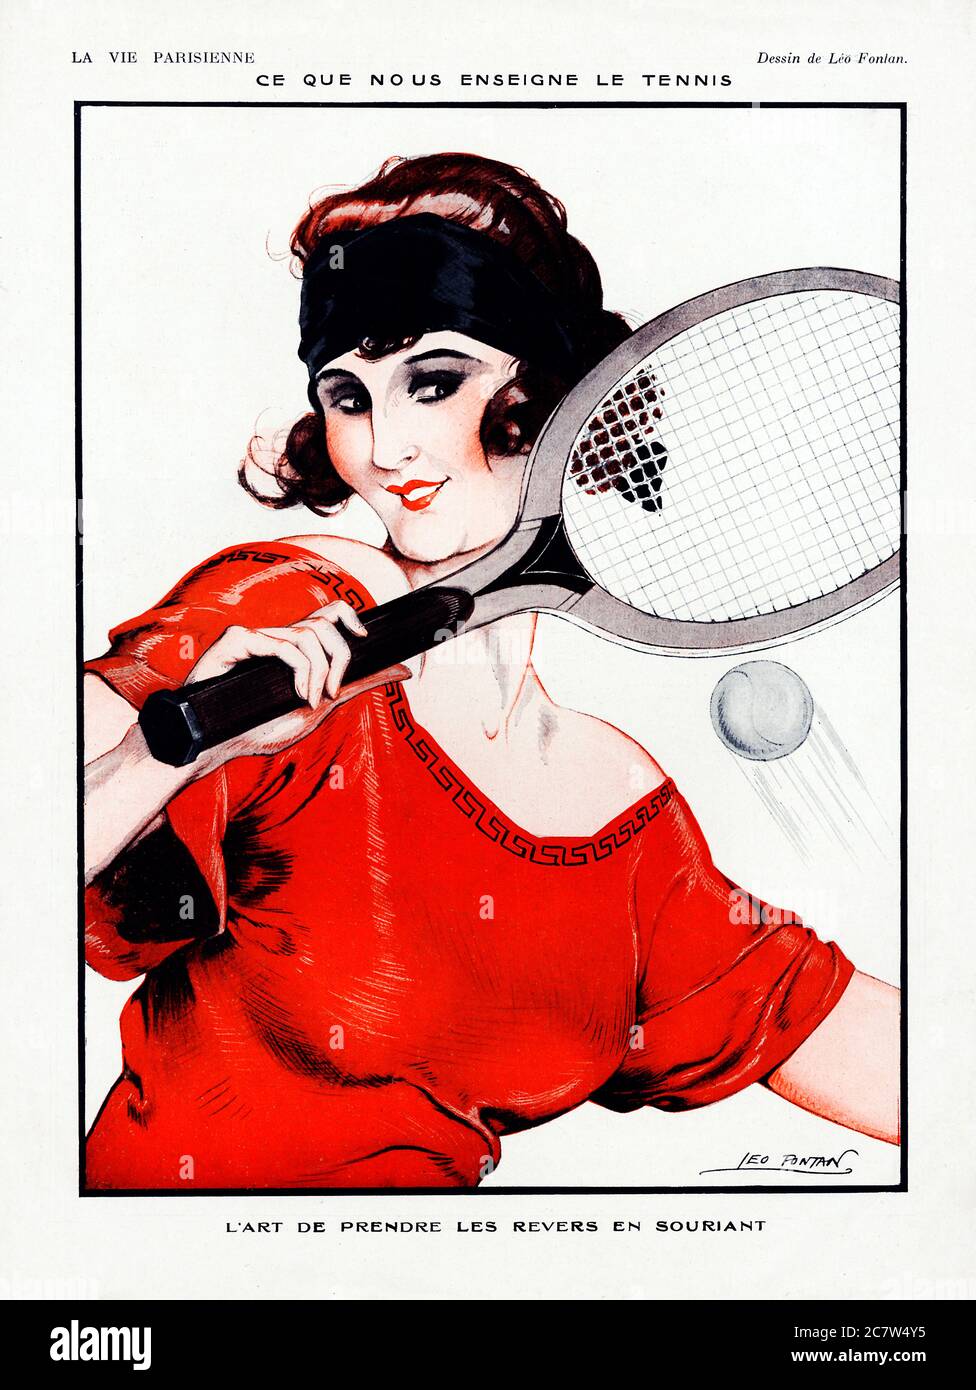 Tennisunterricht, die Kunst des Lächelns auf einer Hinterhand, oder besser gesagt ein Rückschlag, wie durch eine Belle des Platzes gezeigt Stockfoto